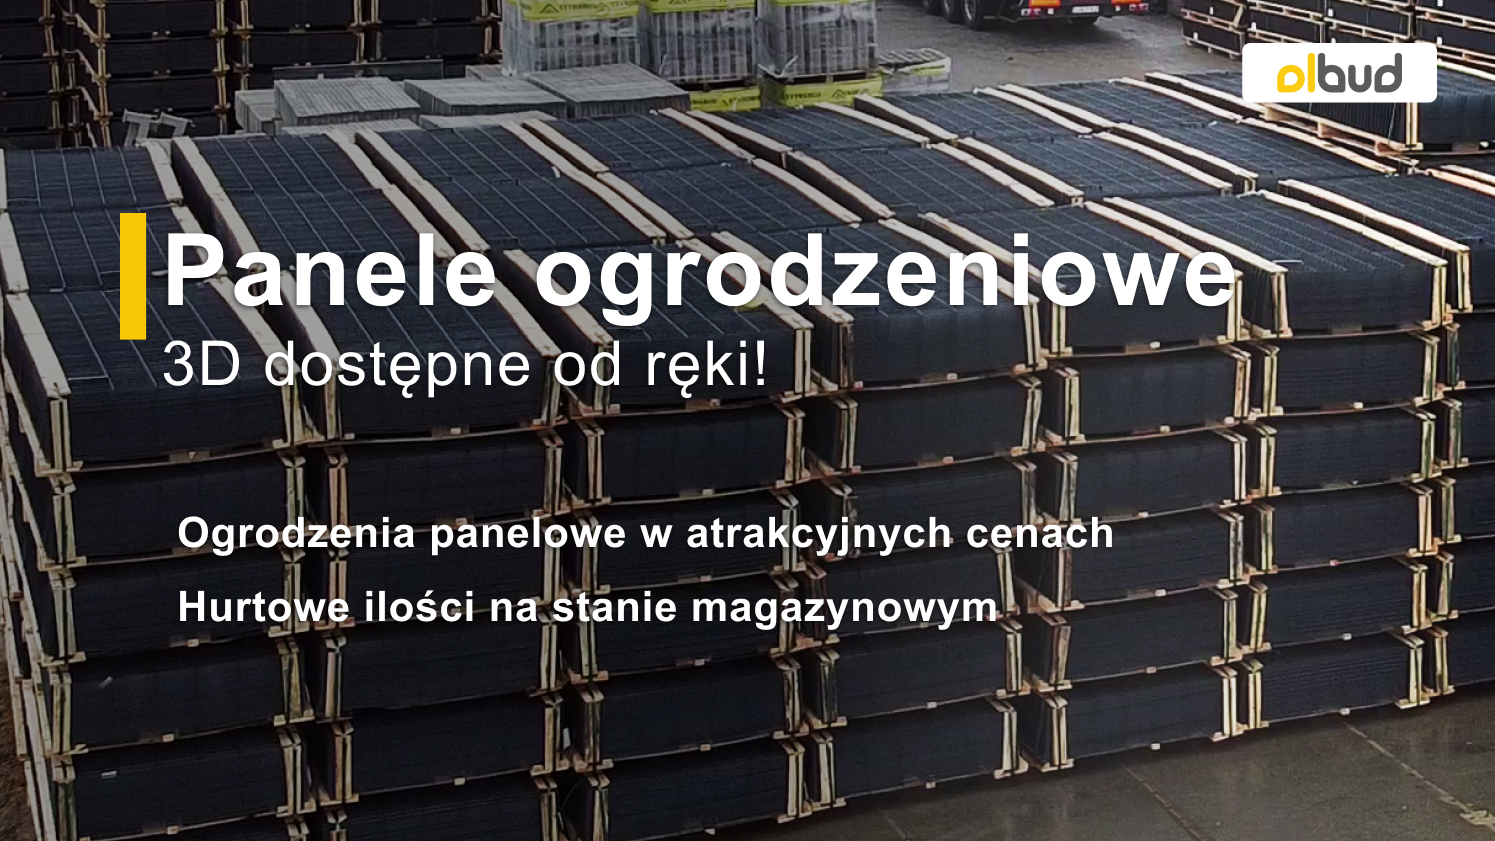 Ogrodzenia panelowe 3D dostępne od ręki- nowy magazyn ogrodzeń w Gdańsku!